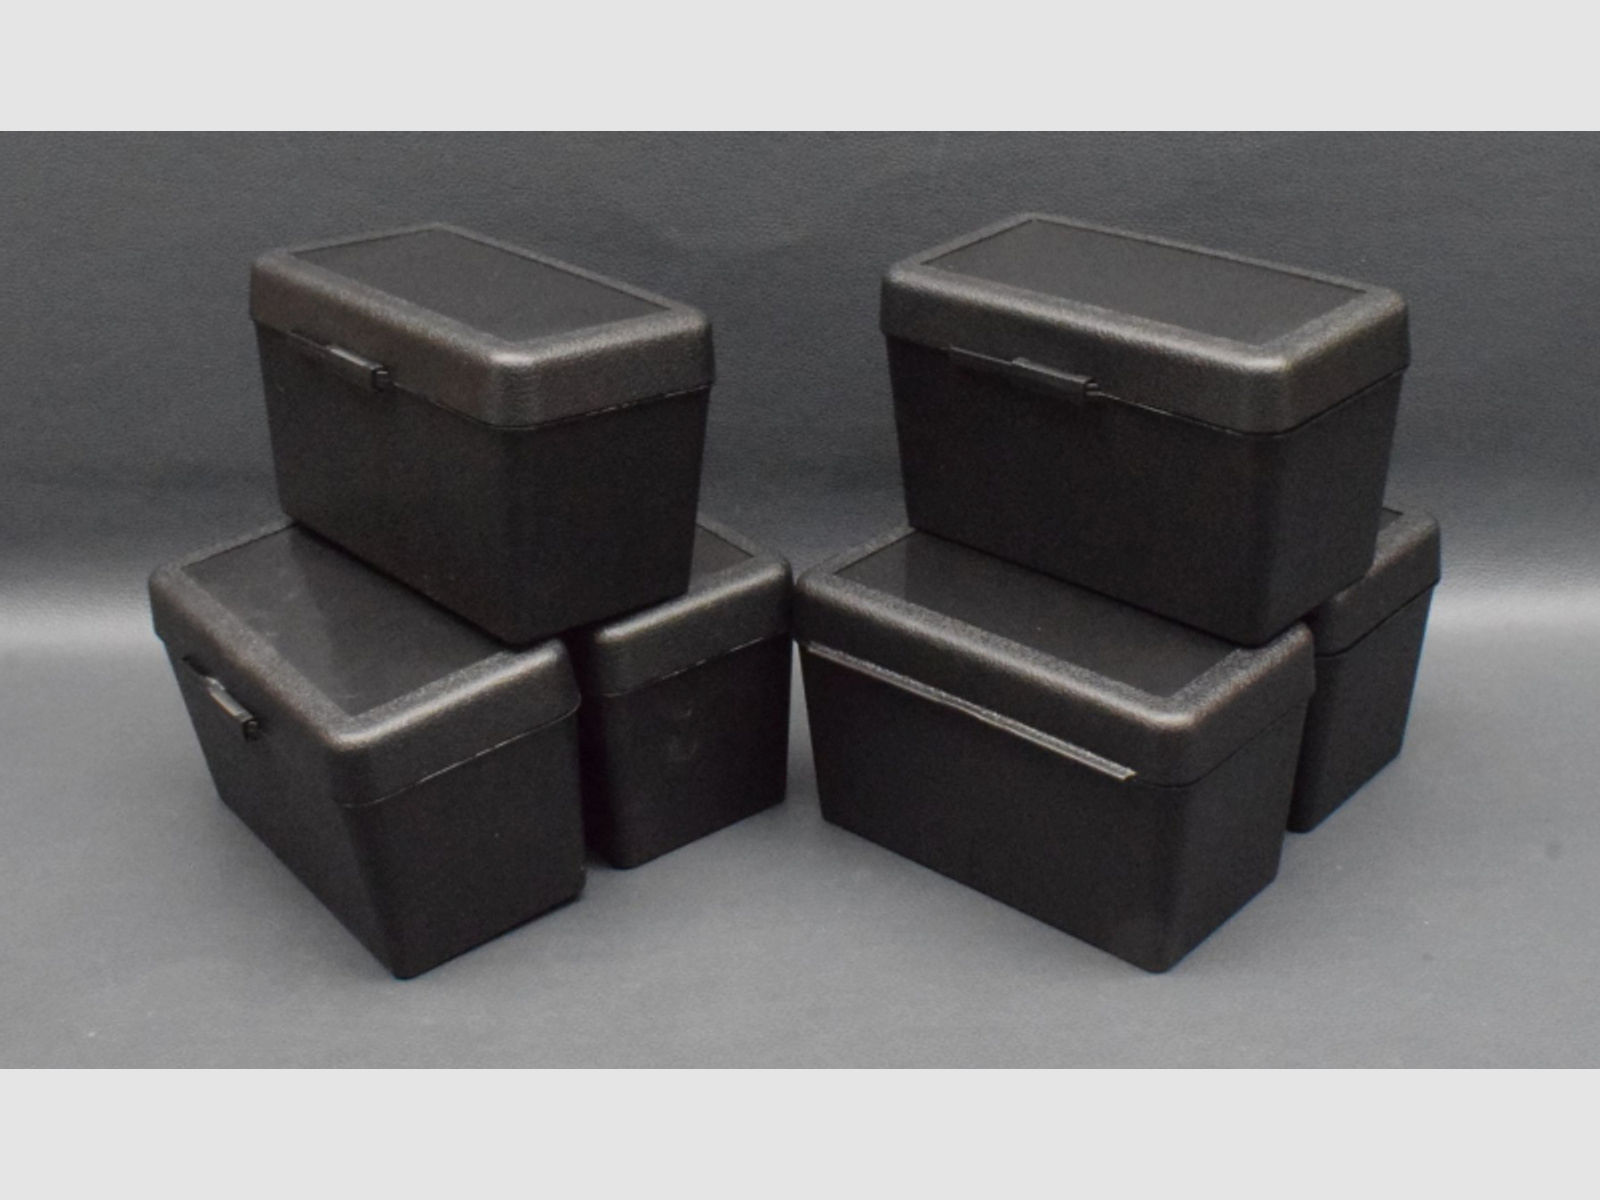 6 Stück Patronenboxen für Kaliber 300 Win, Kunststoffbox, schwarz, Neuware zum Sonderpreis !